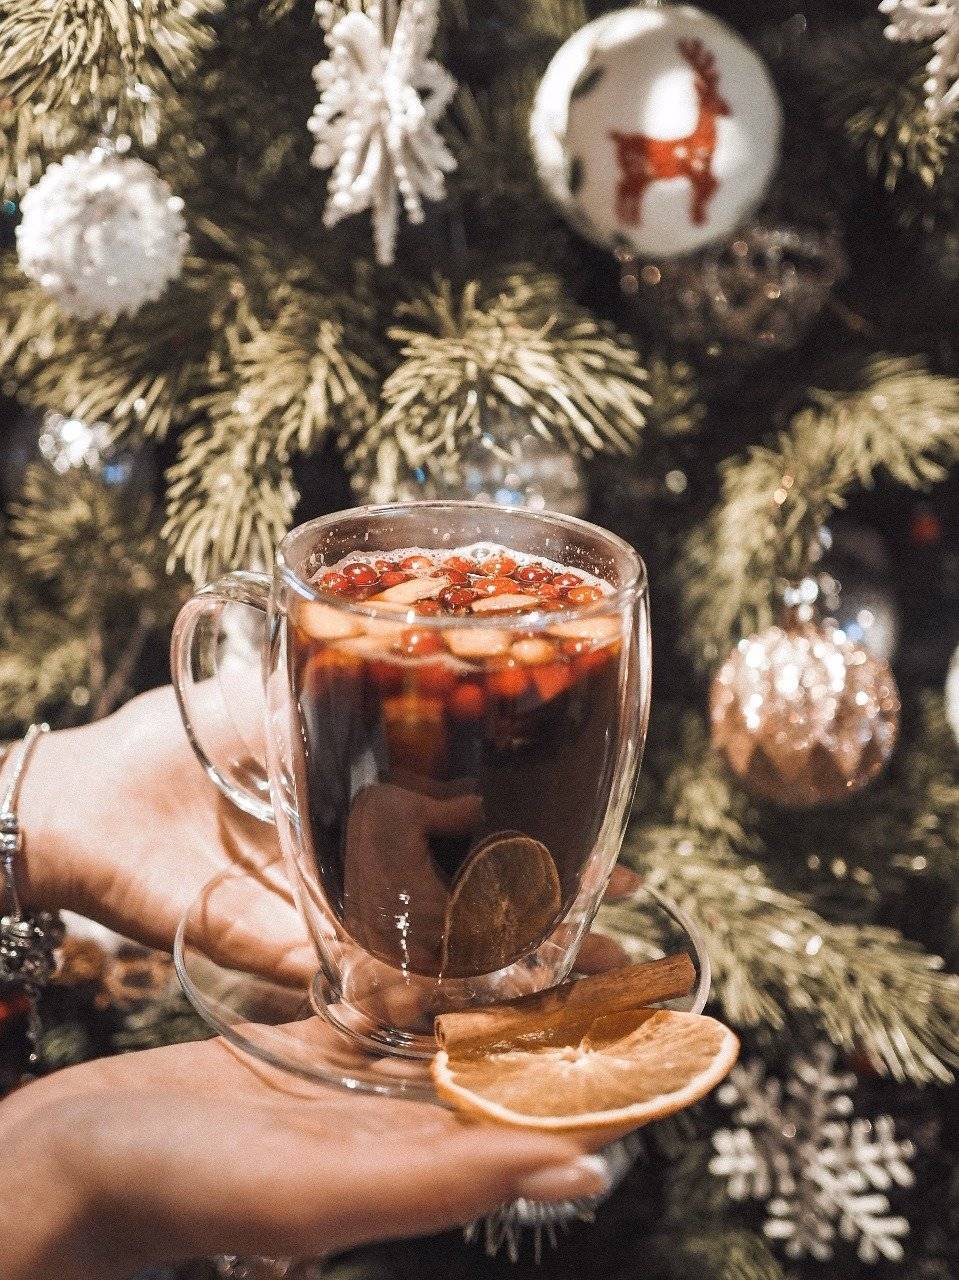 Топ-10 рецептов горячих напитков к зиме 2018 (безалкогольные и алкогольные)